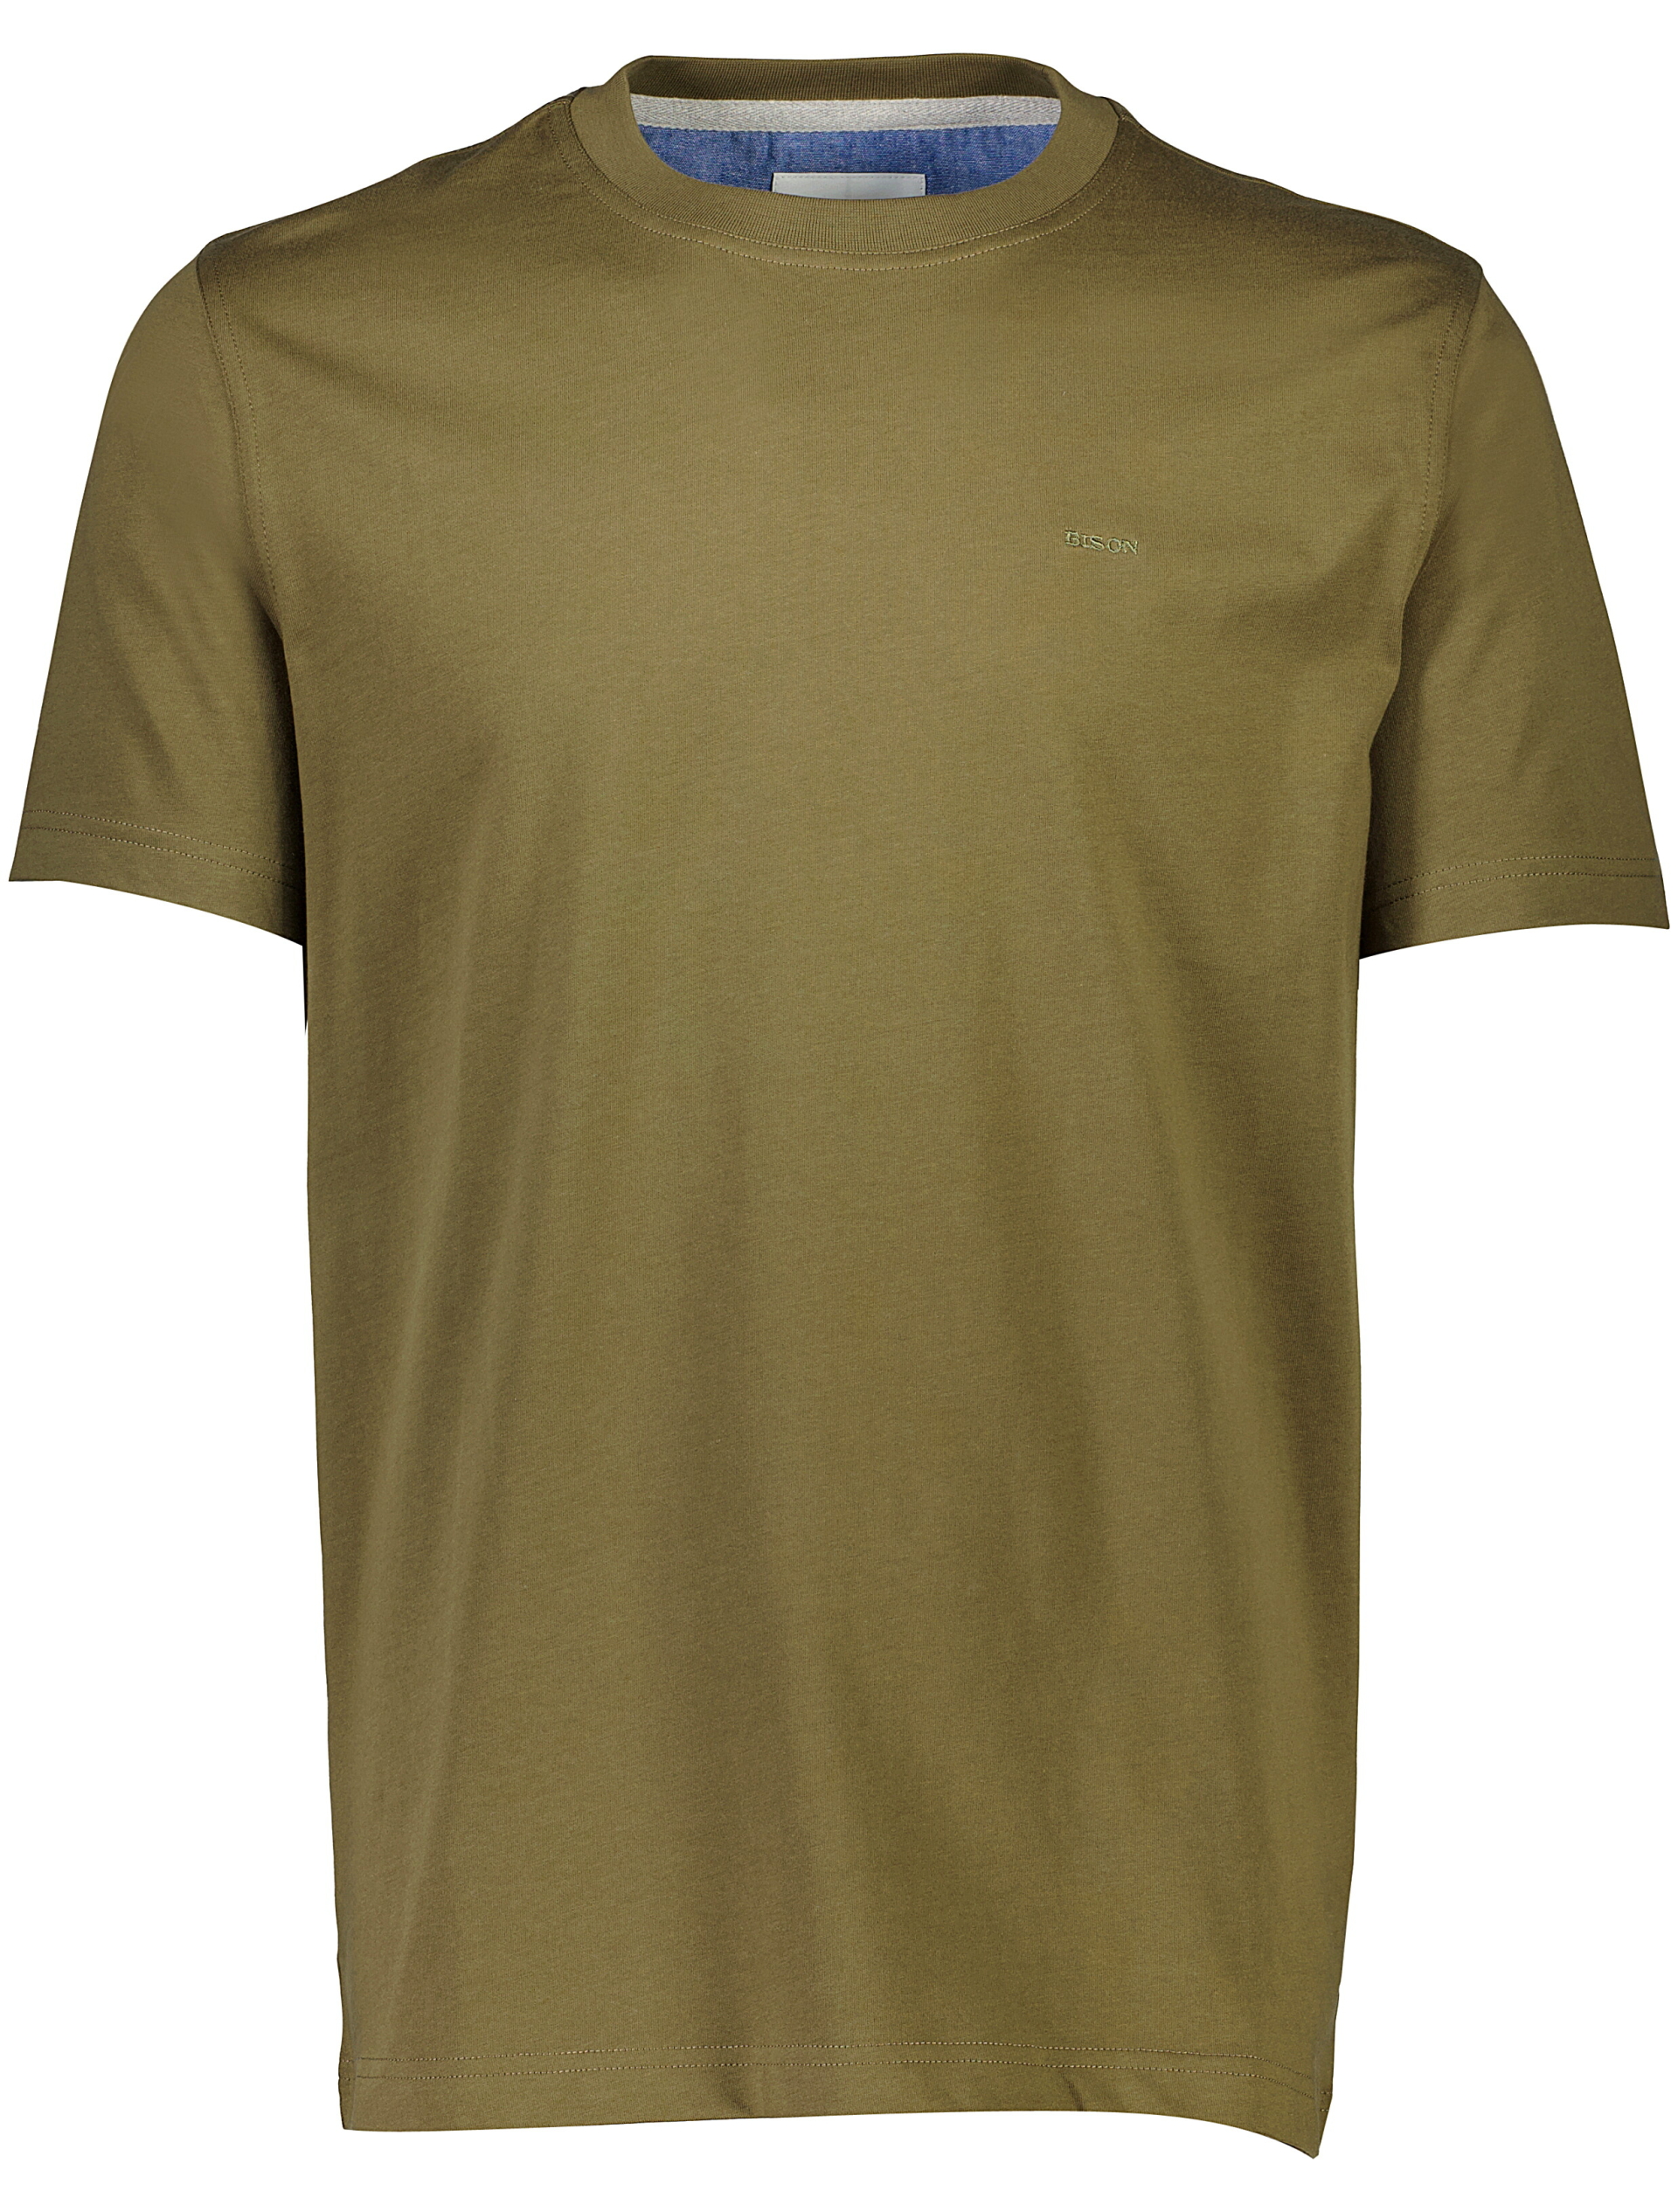 Bison T-shirt grön / army leaf